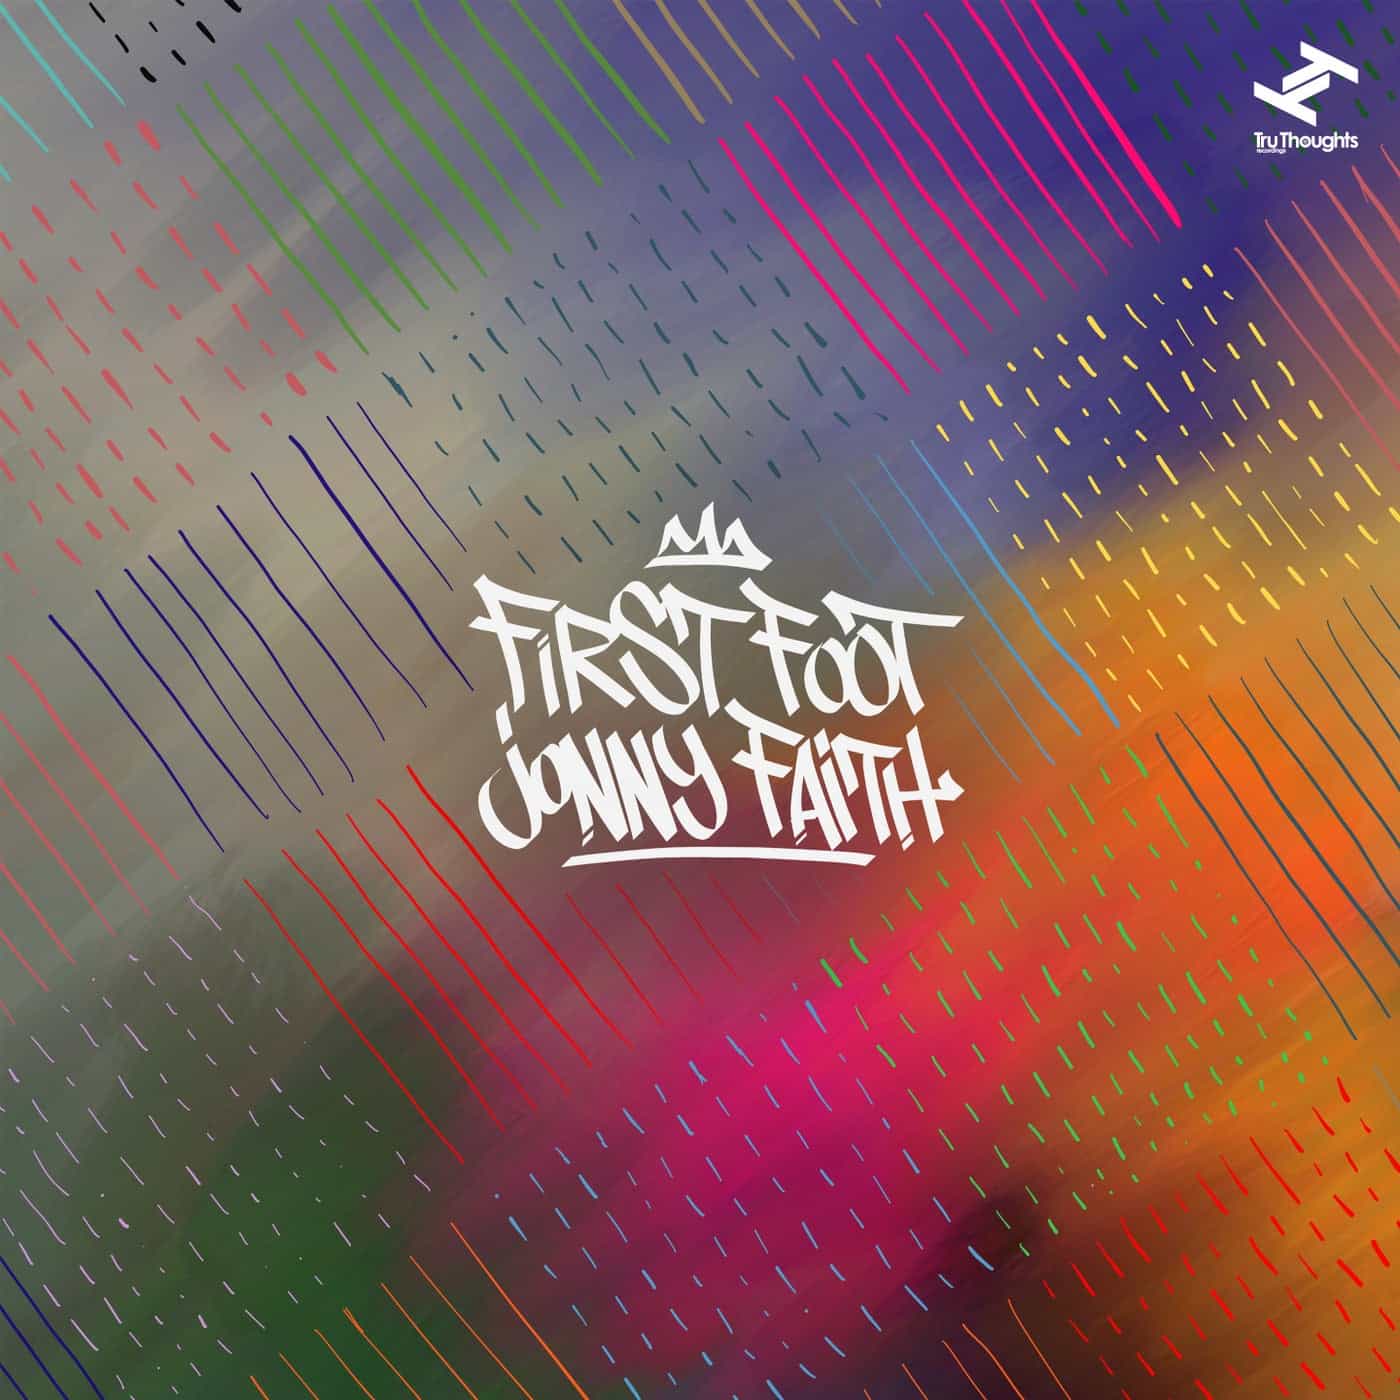 image cover: Jonny Faith - First Foot - EP / TRUDD431